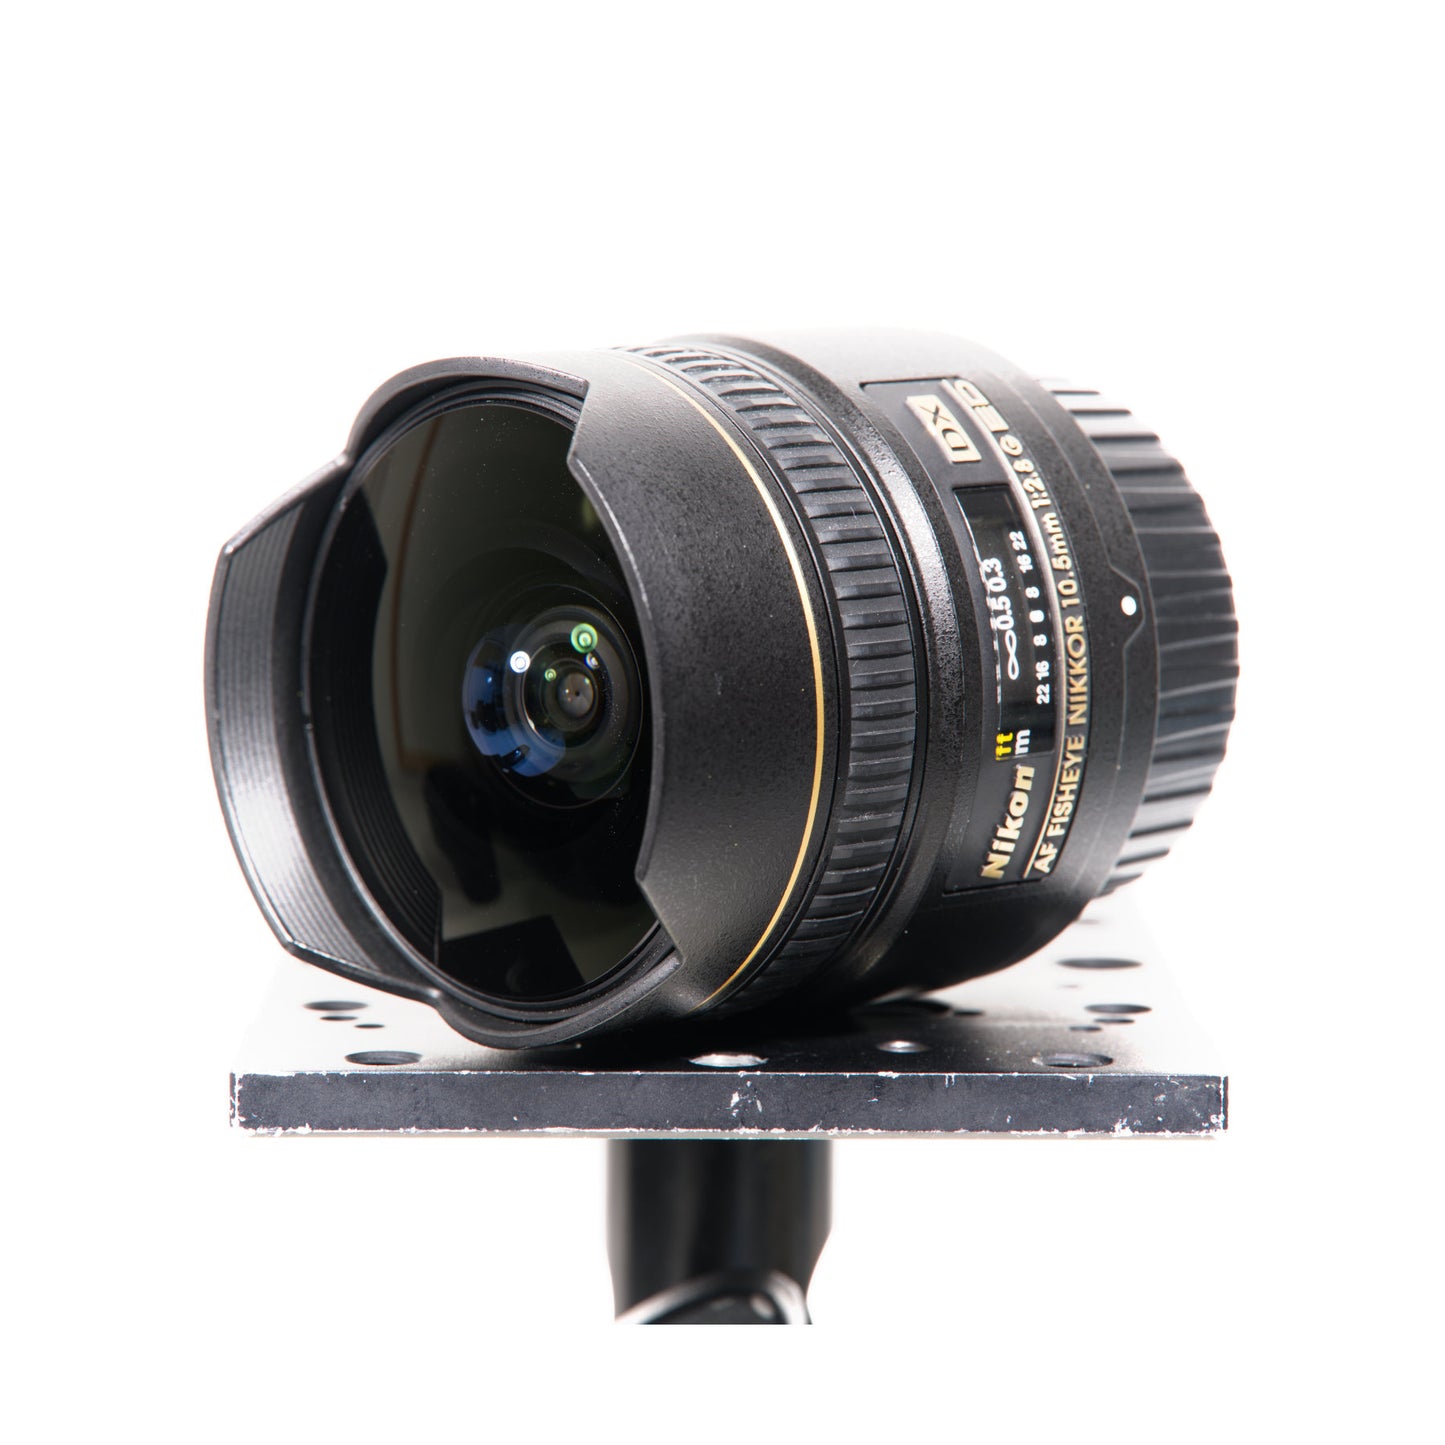 Buy Nikon AF DX Fisheye-NIKKOR 10.5mm f/2.8G ED Lens at Topic Store 